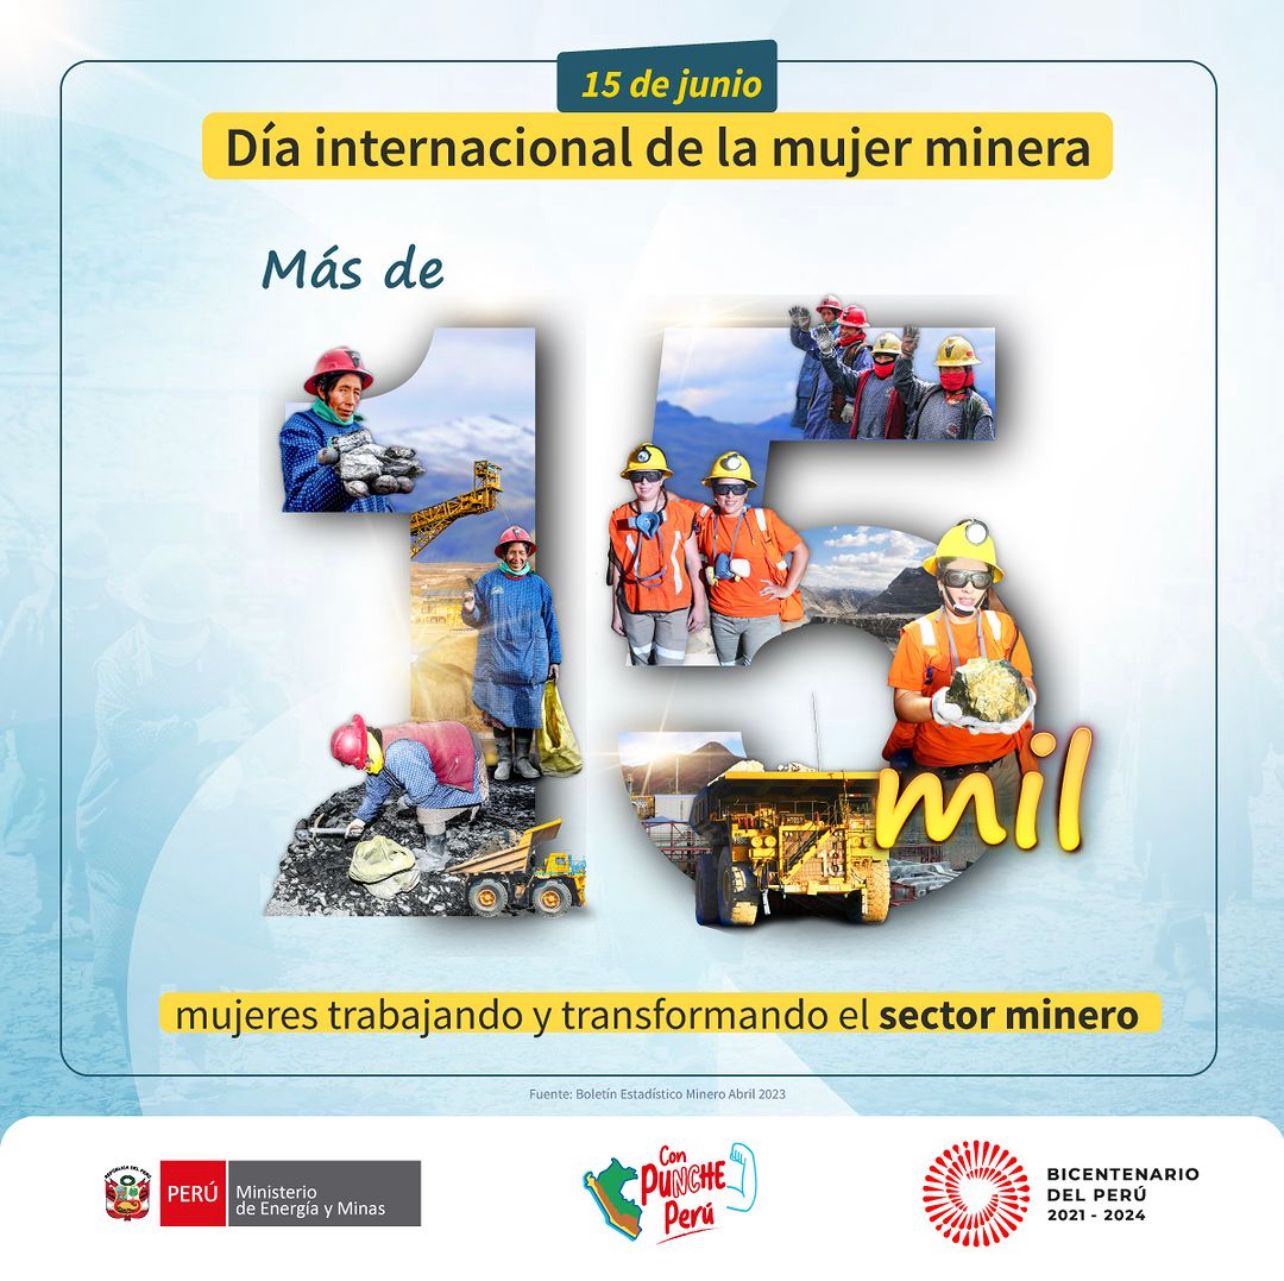 Póster confeccionado con motivo del día internacional de la mujer minera